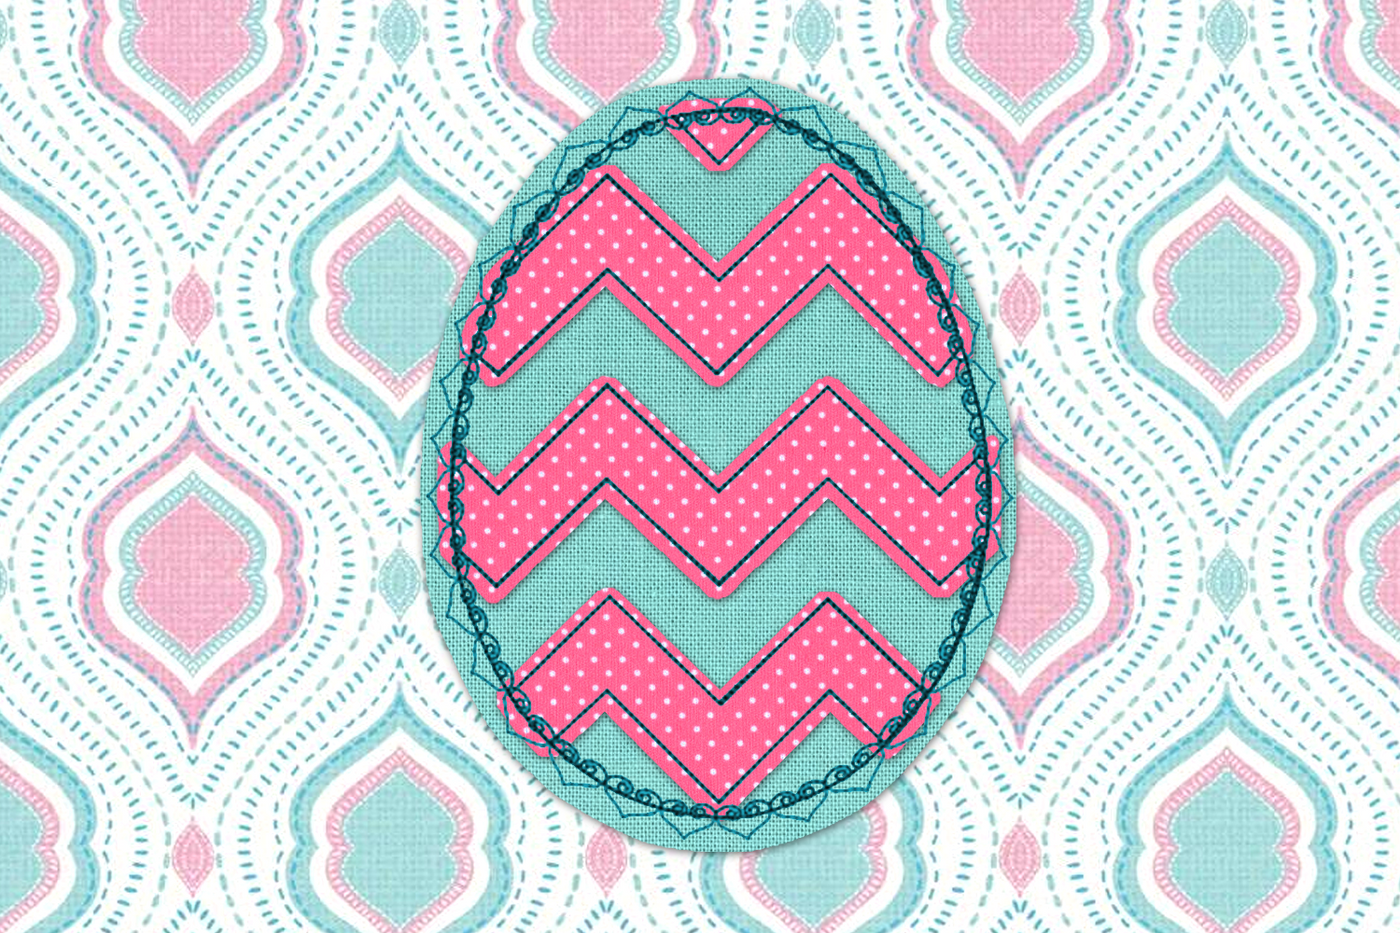 Chevron Easter egg raggy applique with heart border